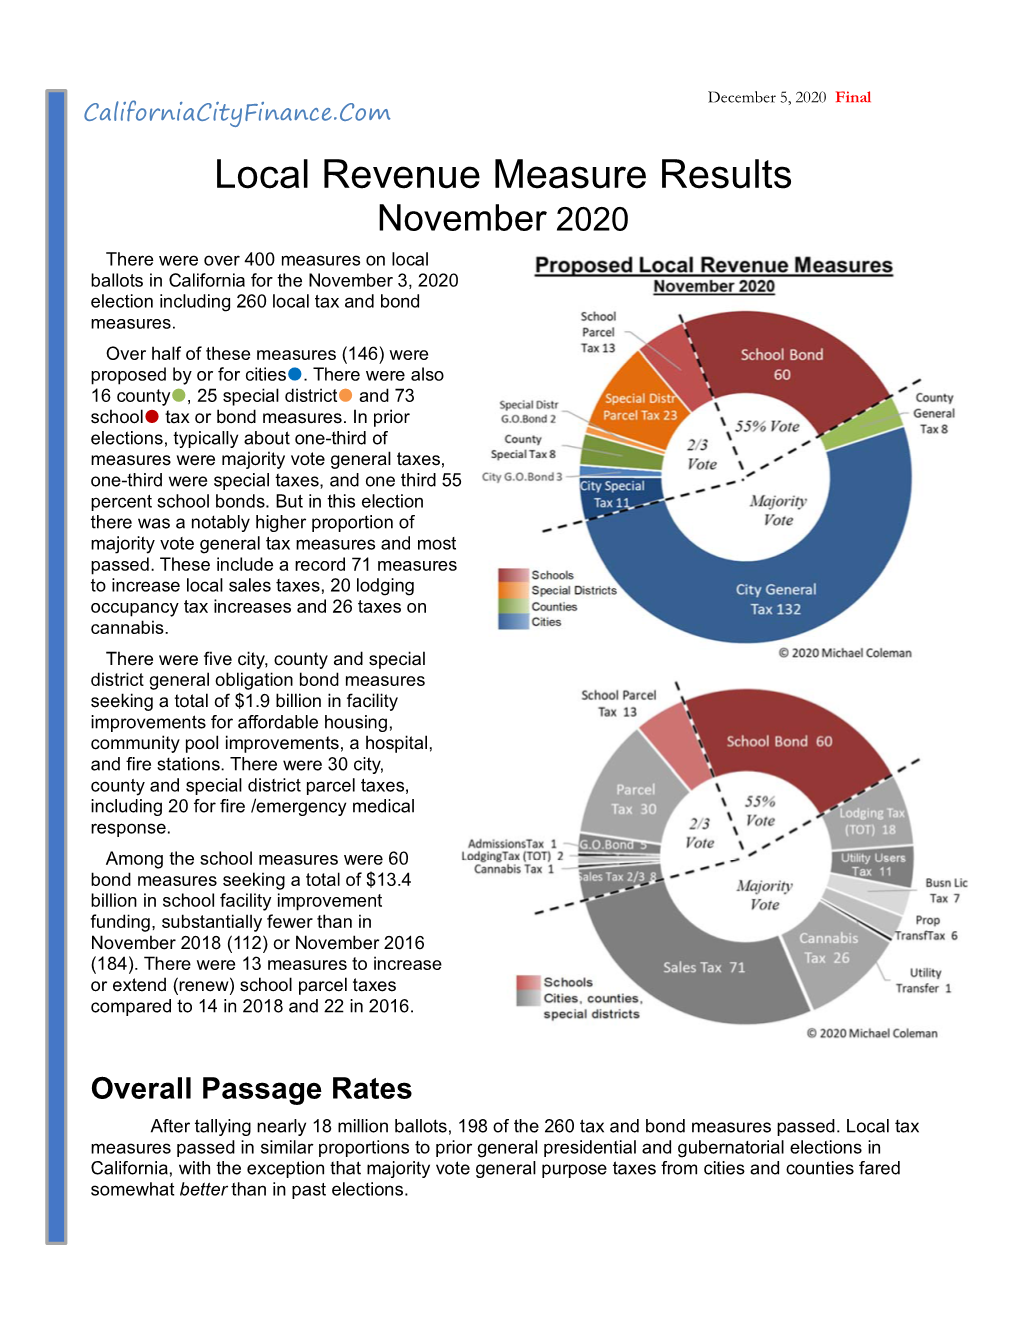 Local Revenue Measure Results